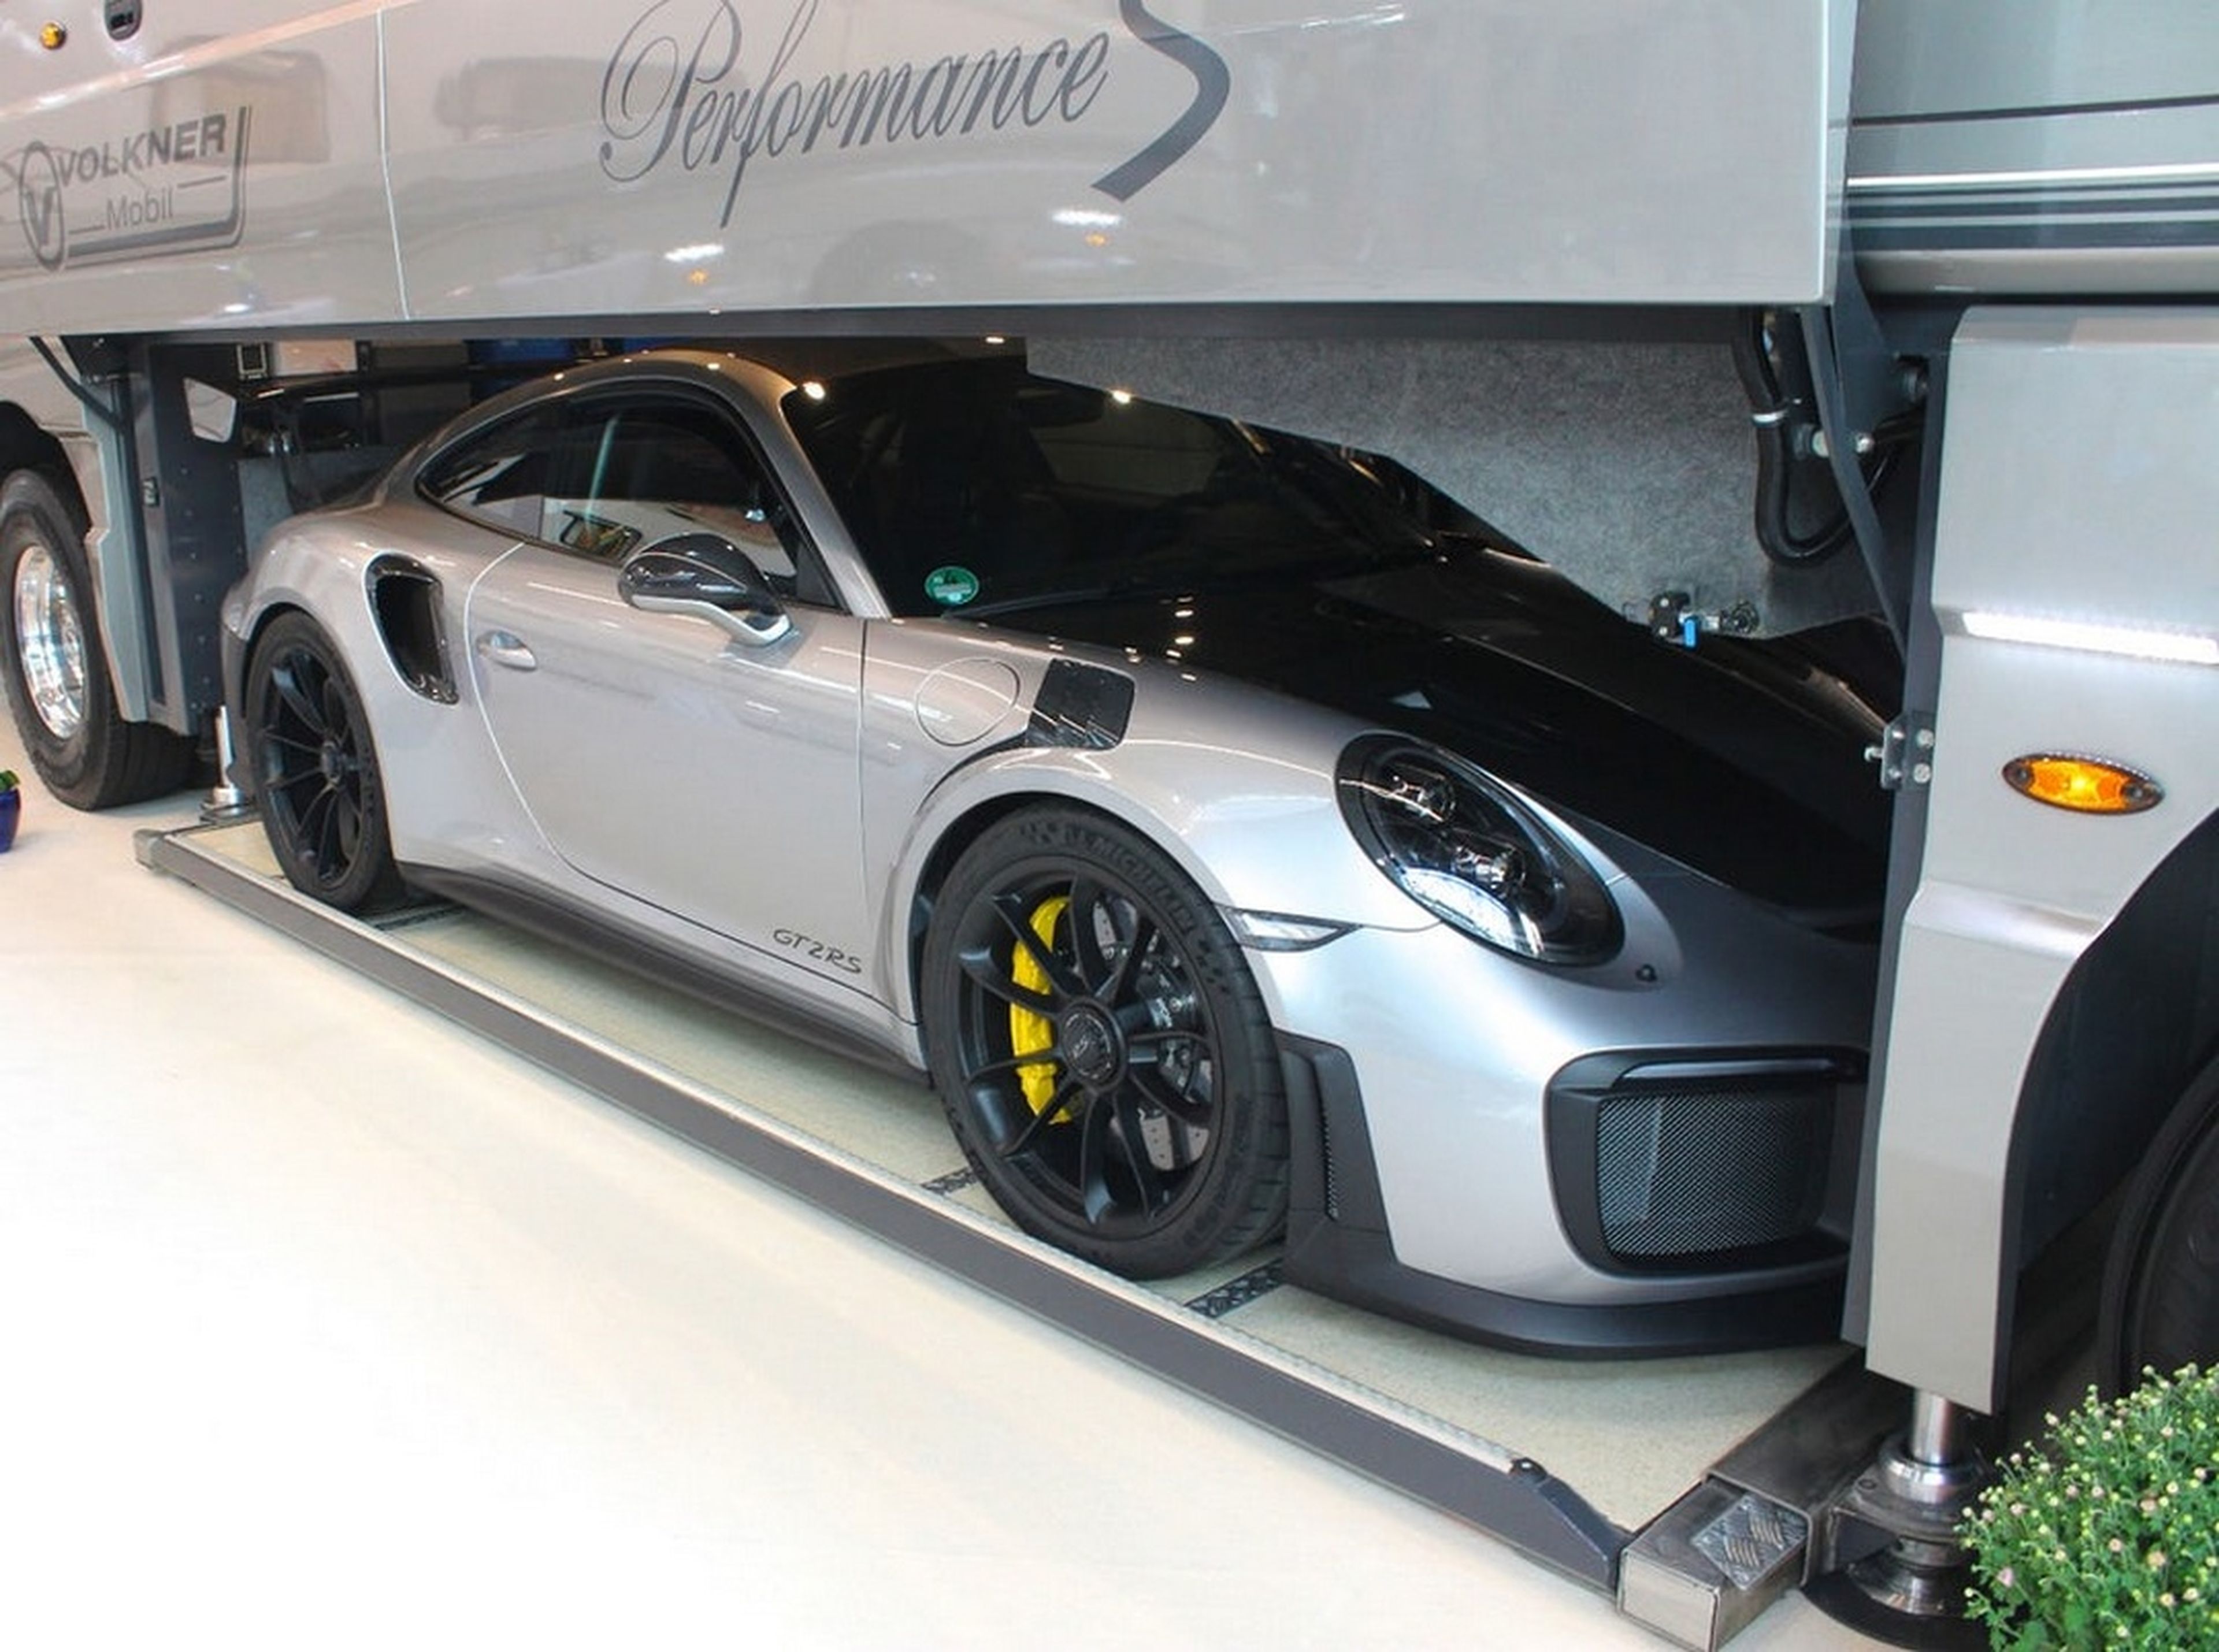 La caravana más cara del mundo lleva un Porsche 911 en el maletero